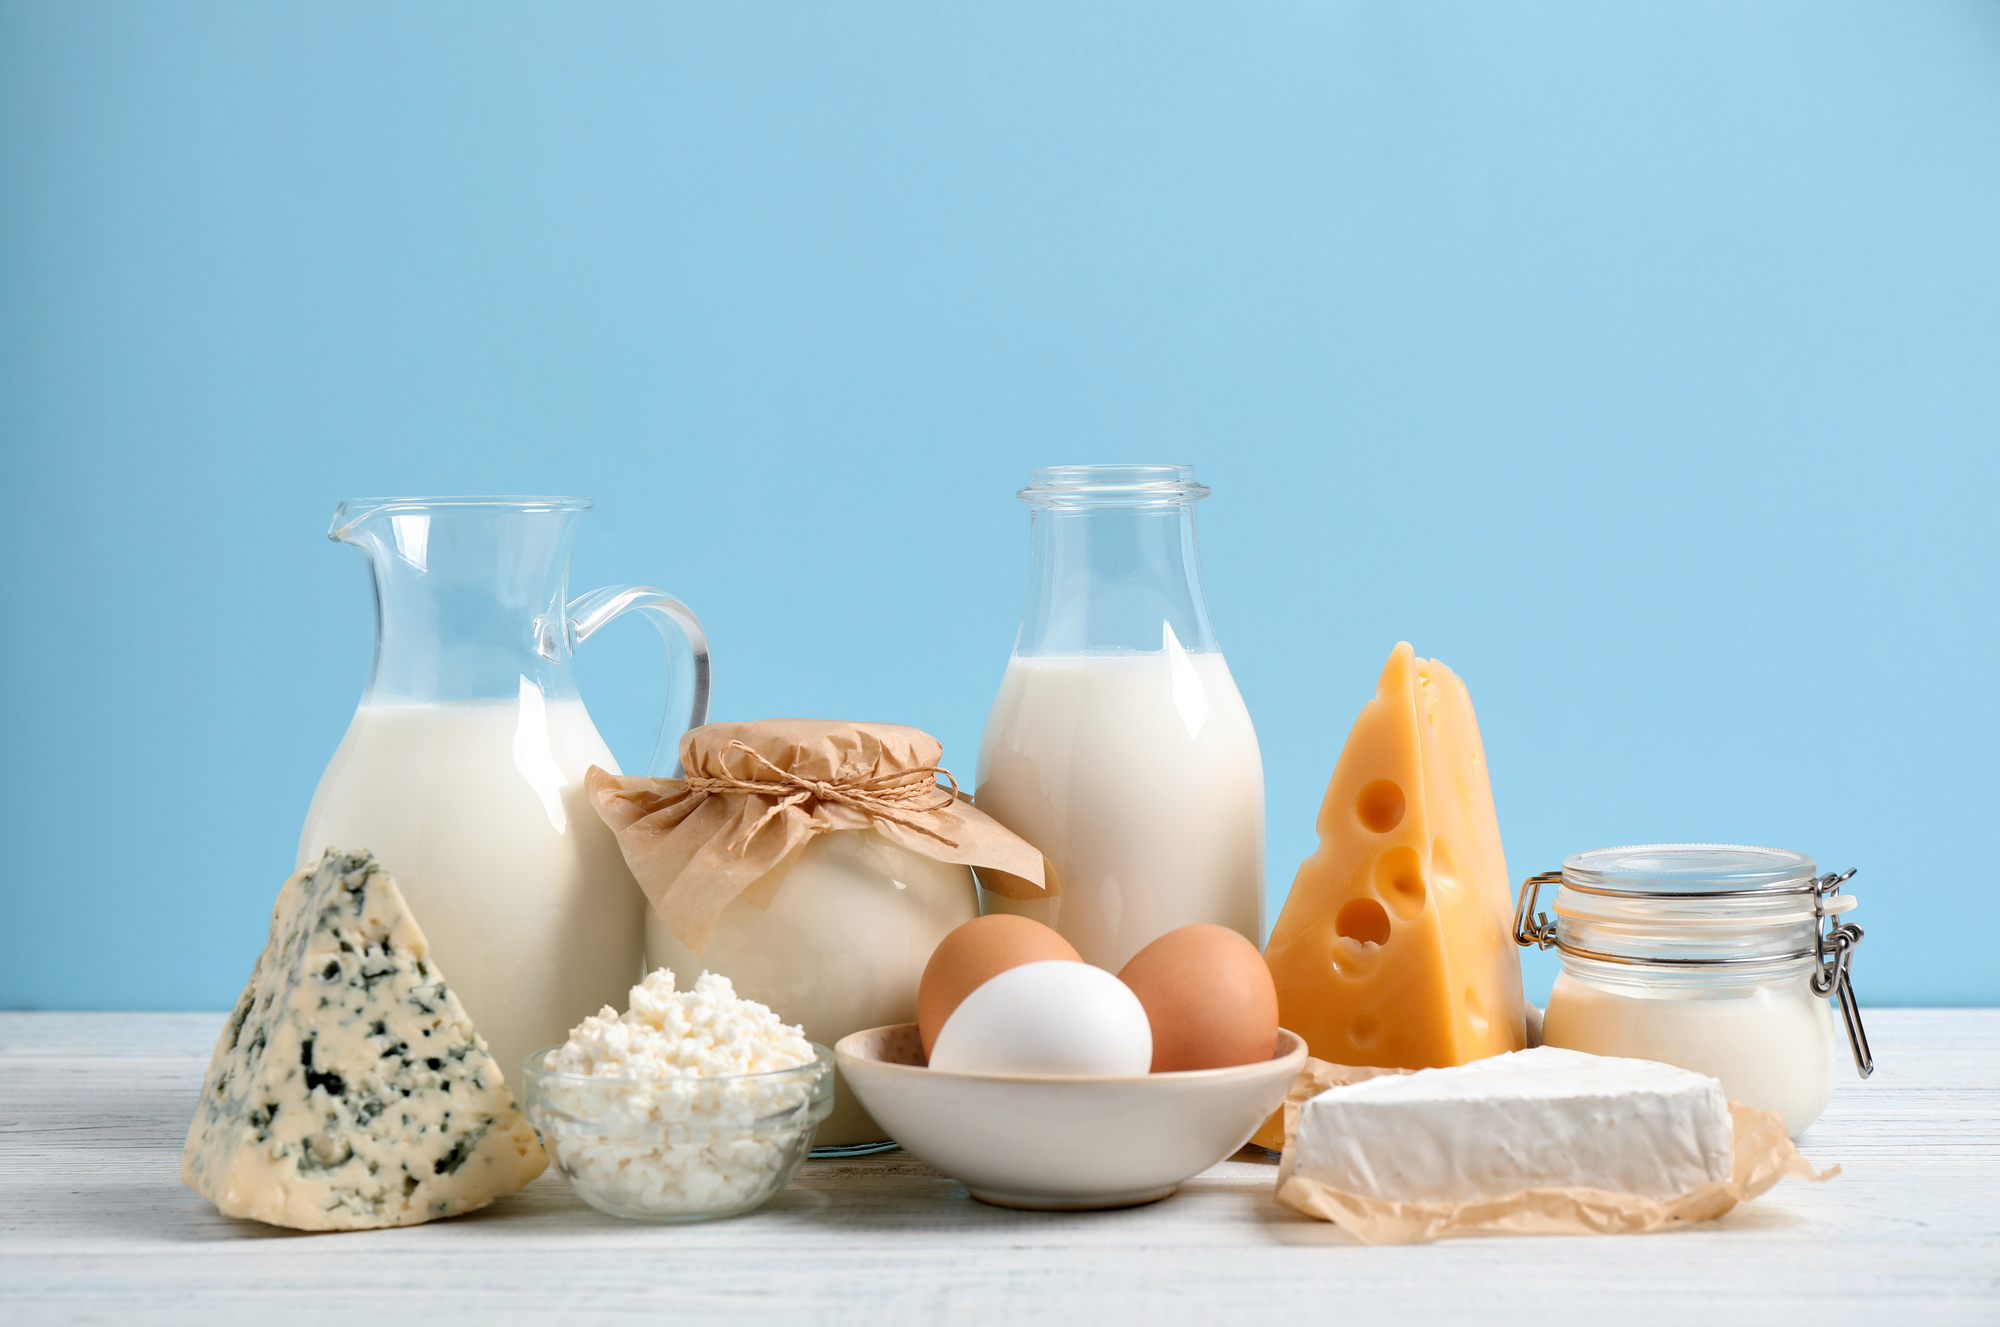 FAO: En diciembre siguieron aumentando las cotizaciones internacionales de la mantequilla y la leche en polvo, gracias a la fuerte demanda mundial